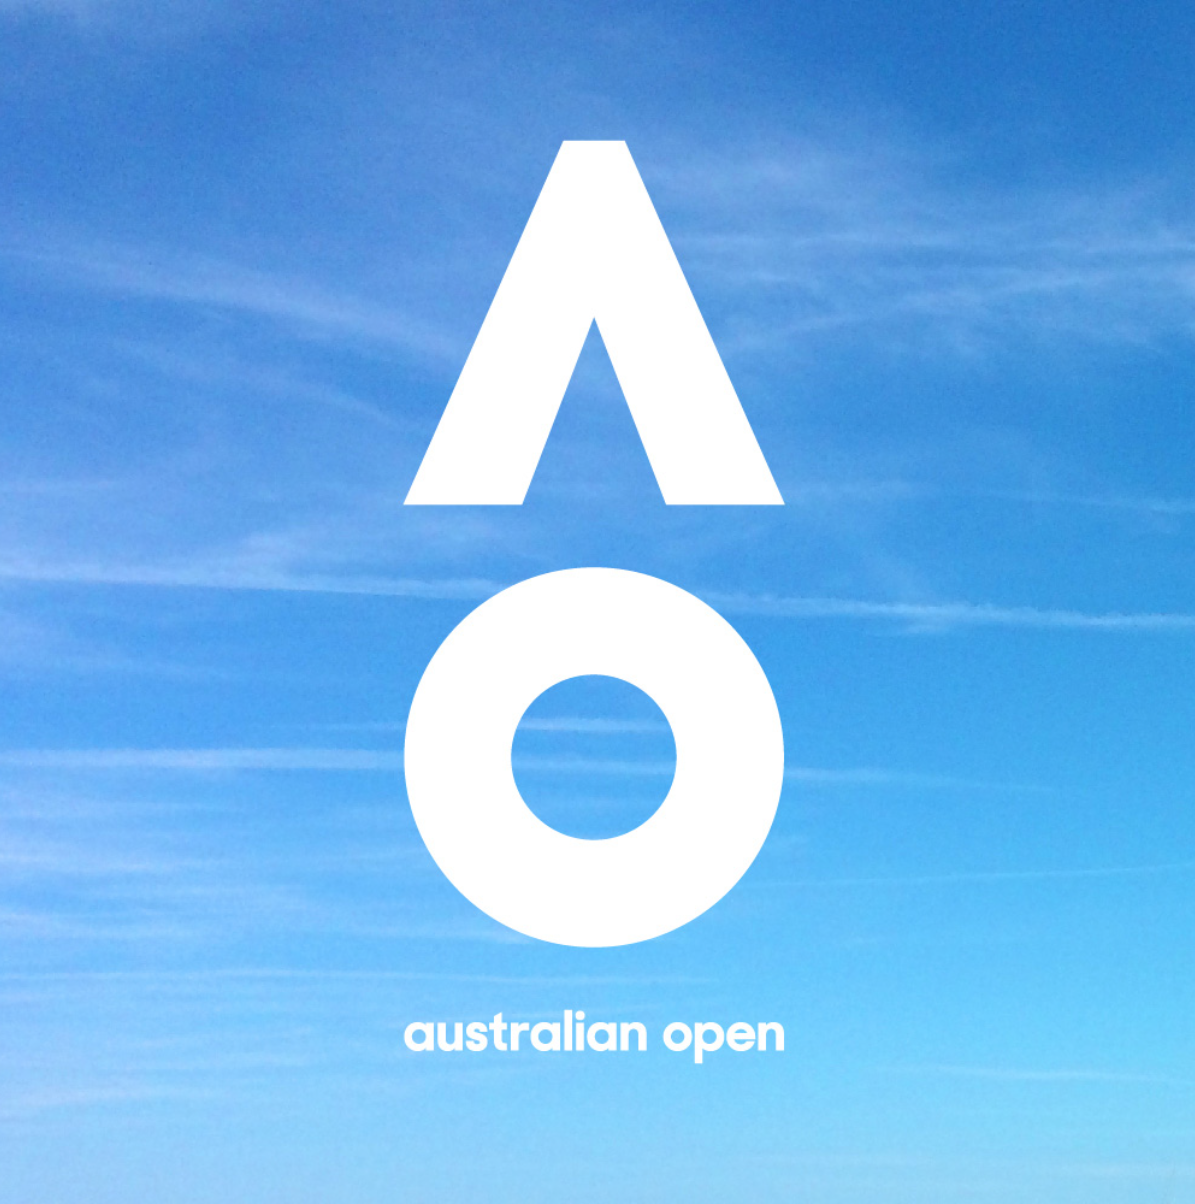 品牌资讯-内页-品牌形象焕新后的成功品牌-Australian-open_07.png